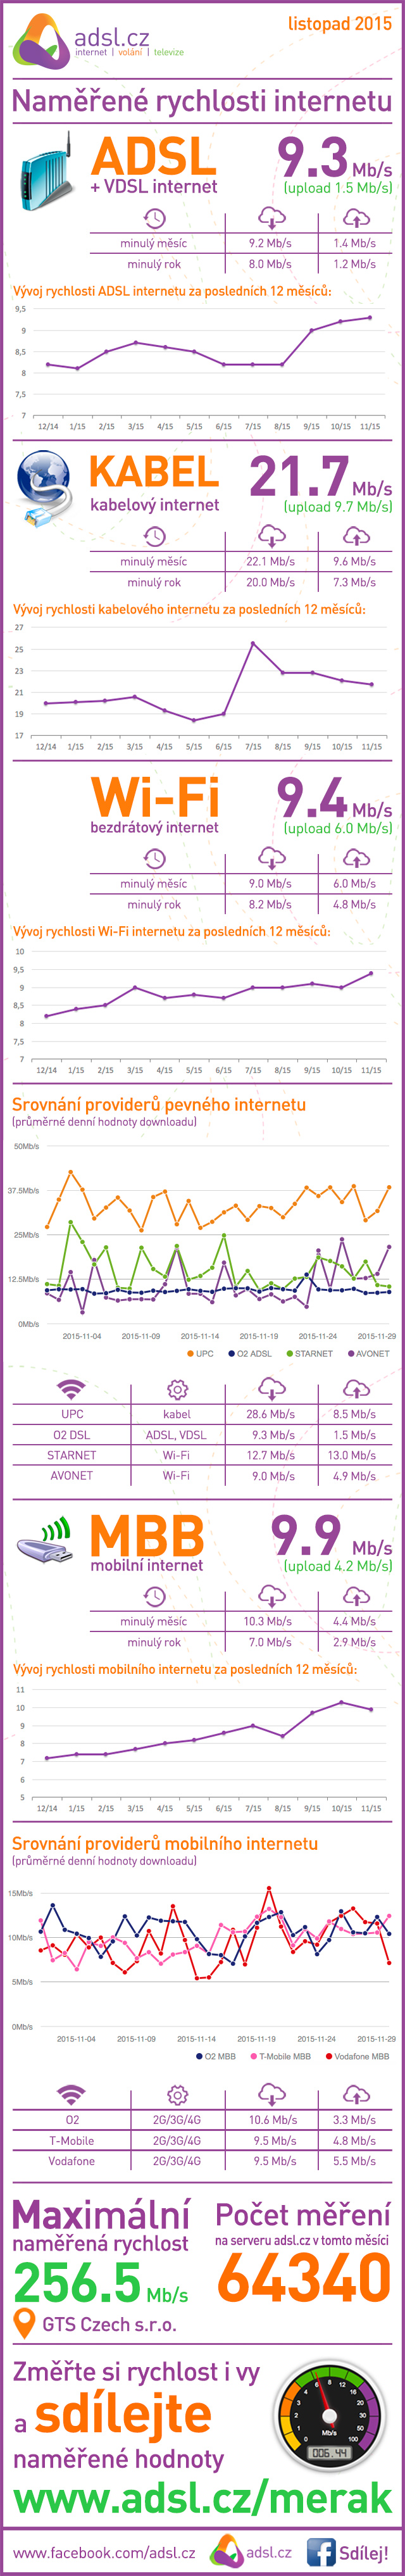 Rychlost internetu za říjen 2015